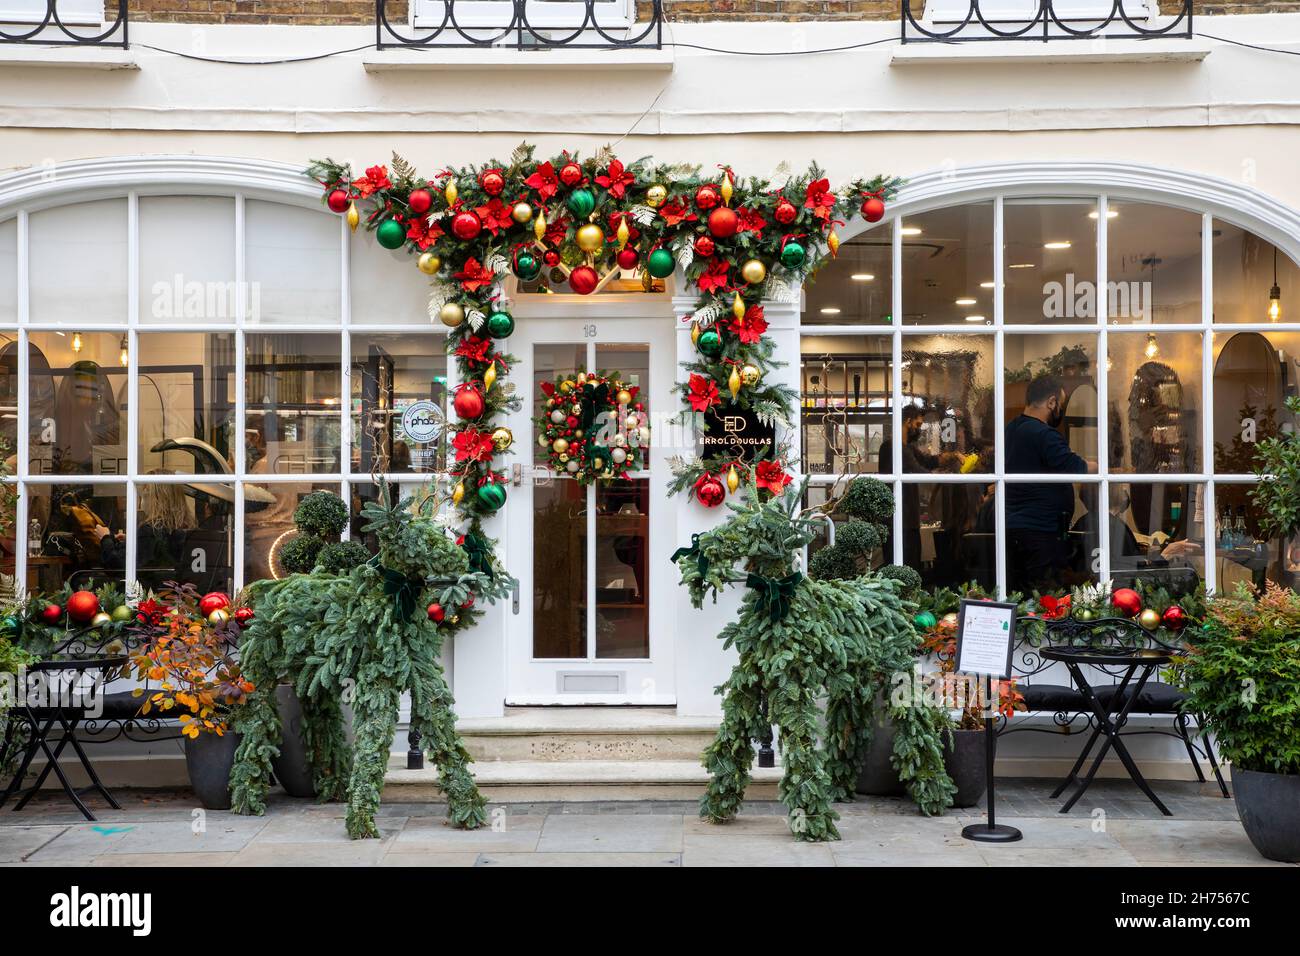 Londres, Royaume-Uni - 20 novembre 2021 : les boutiques sont décorées pour Noël dans un quartier élégant de Belgravia Banque D'Images